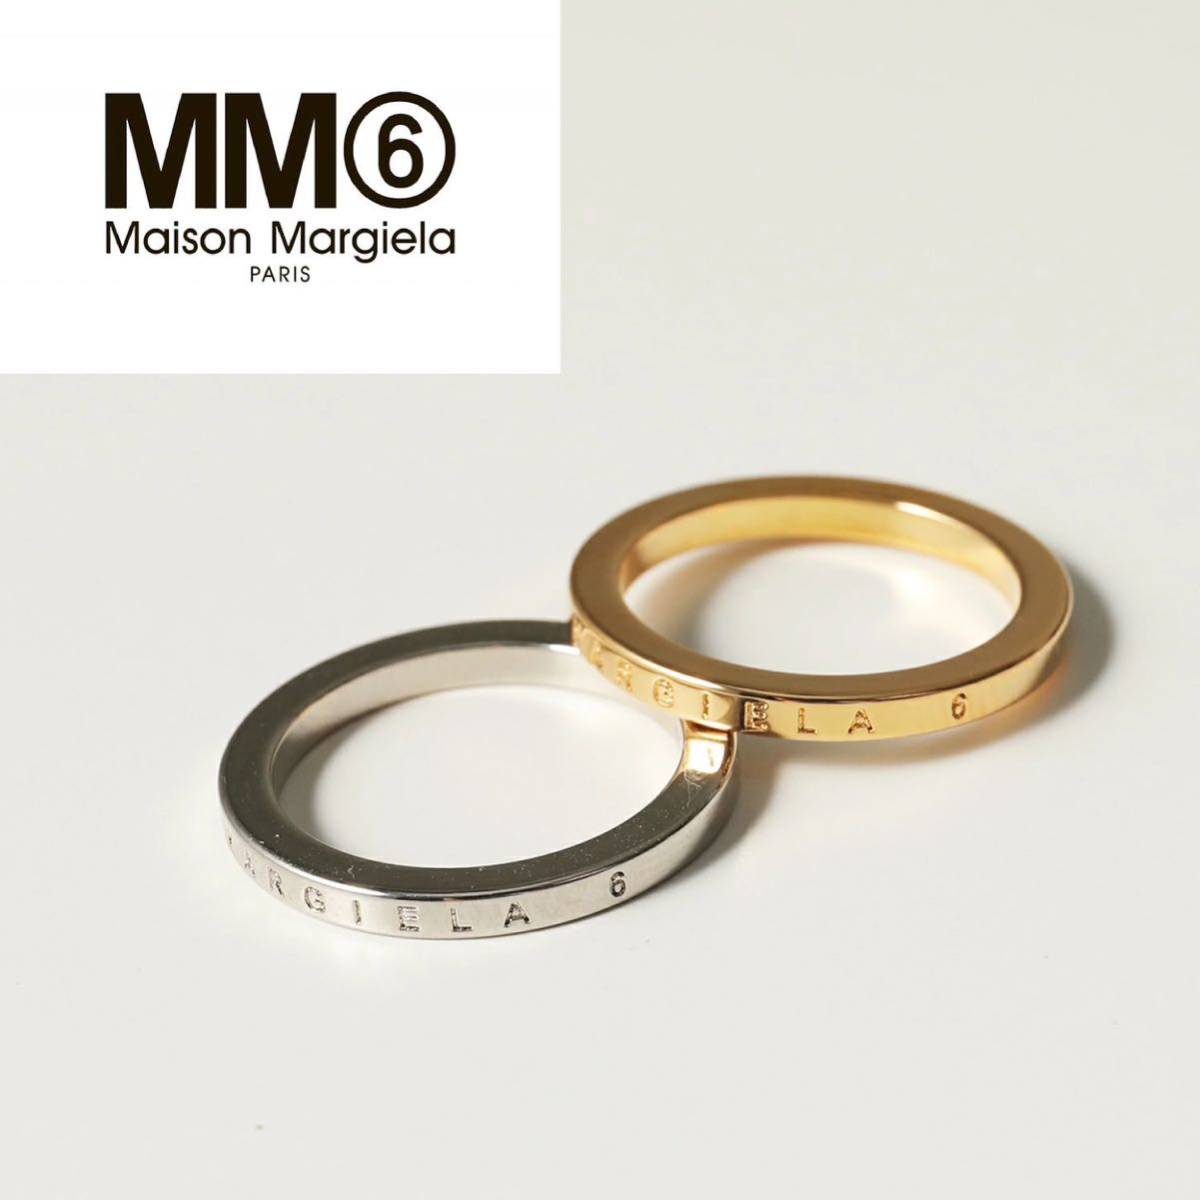 驚きの価格 リング メゾンマルジェラ MM6 新品 指輪 14号サイズ ロゴ